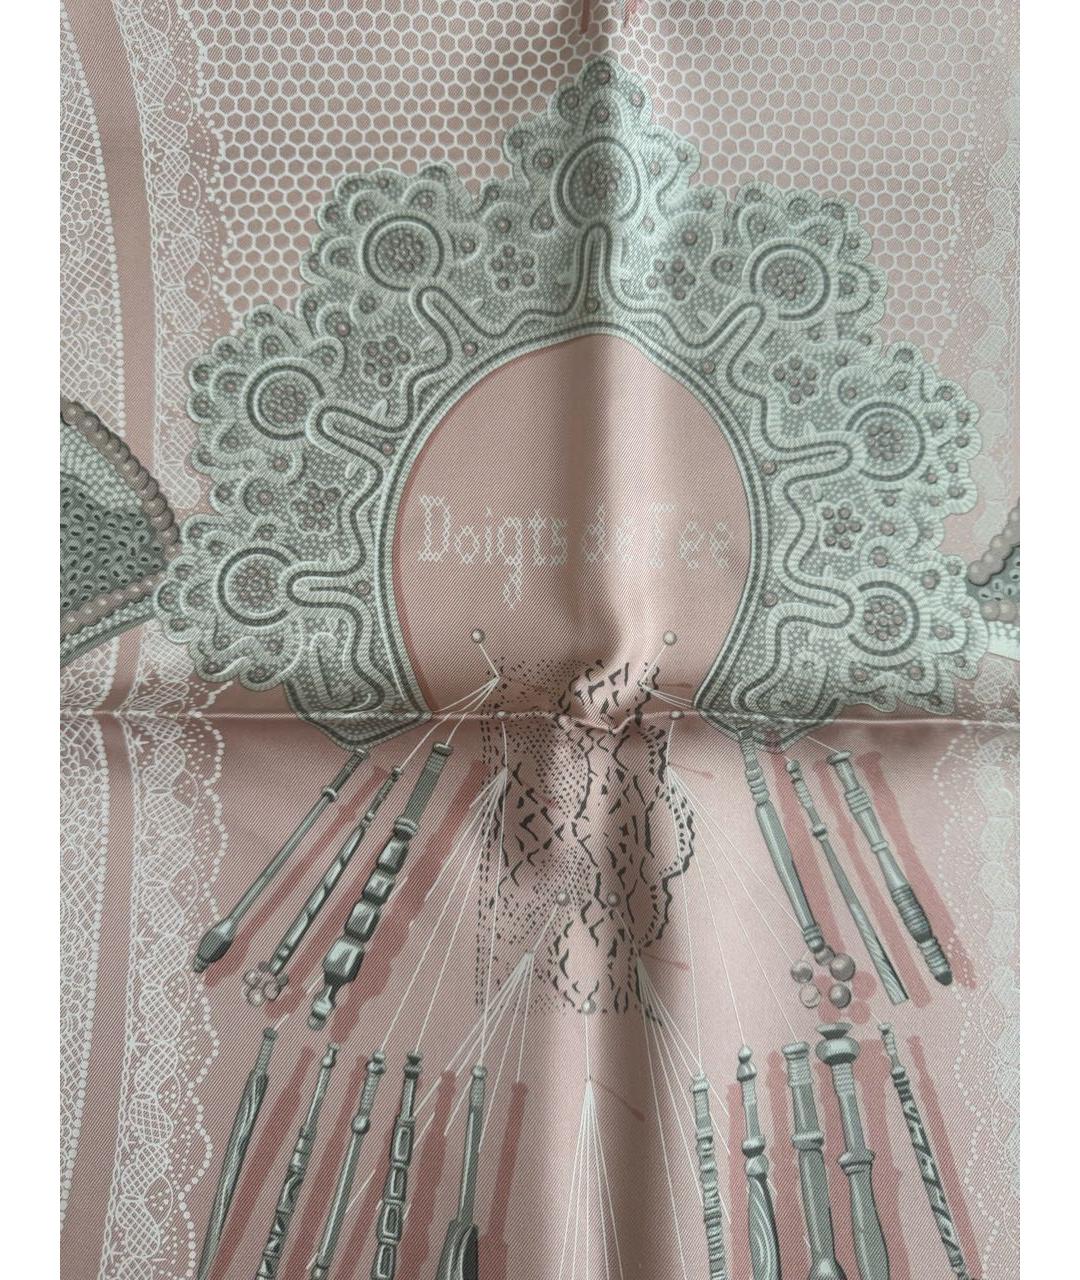 HERMES PRE-OWNED Розовый шелковый платок, фото 2